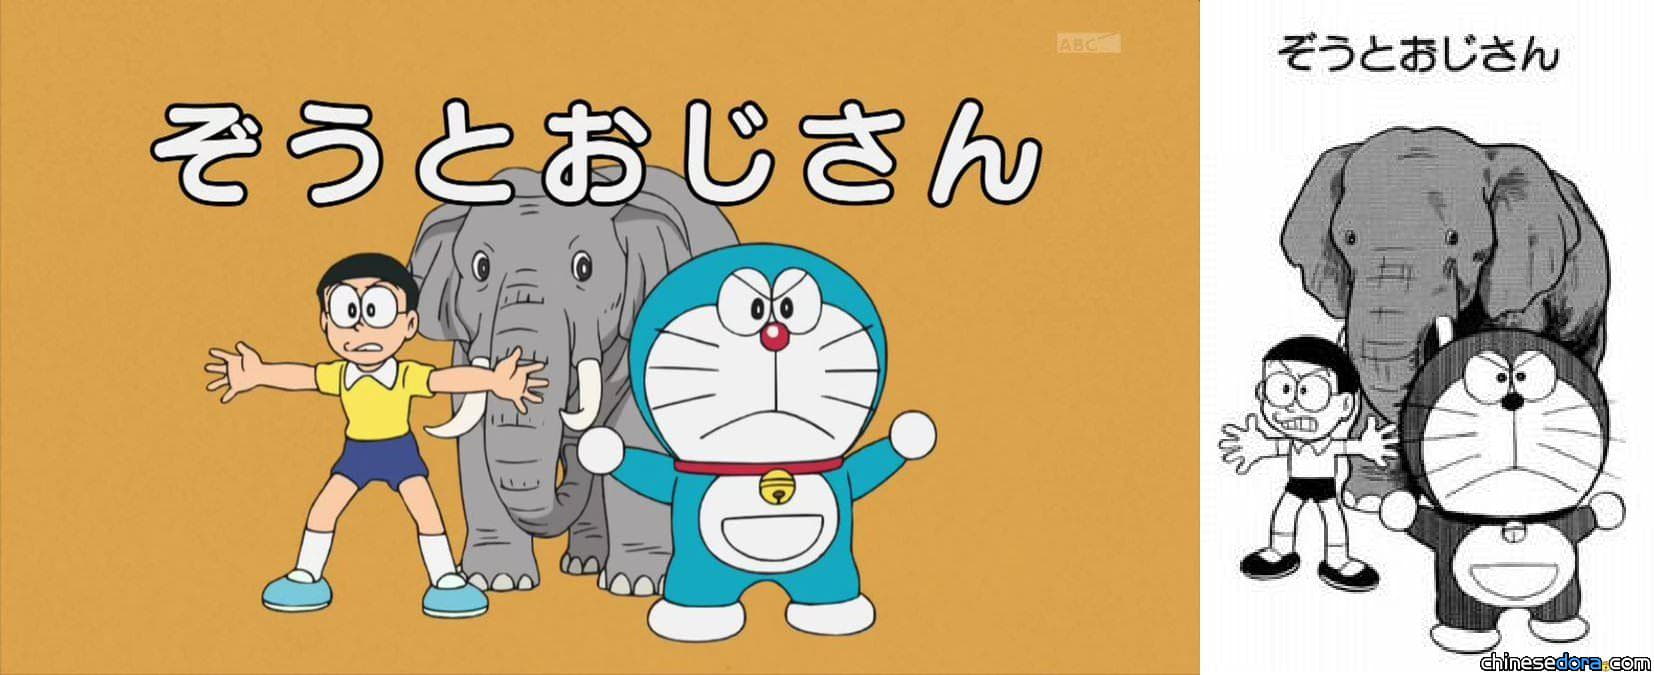 [日本] 《哆啦A夢》進化版動畫首播! 片頭畫面同步更新 網友讚不絕口